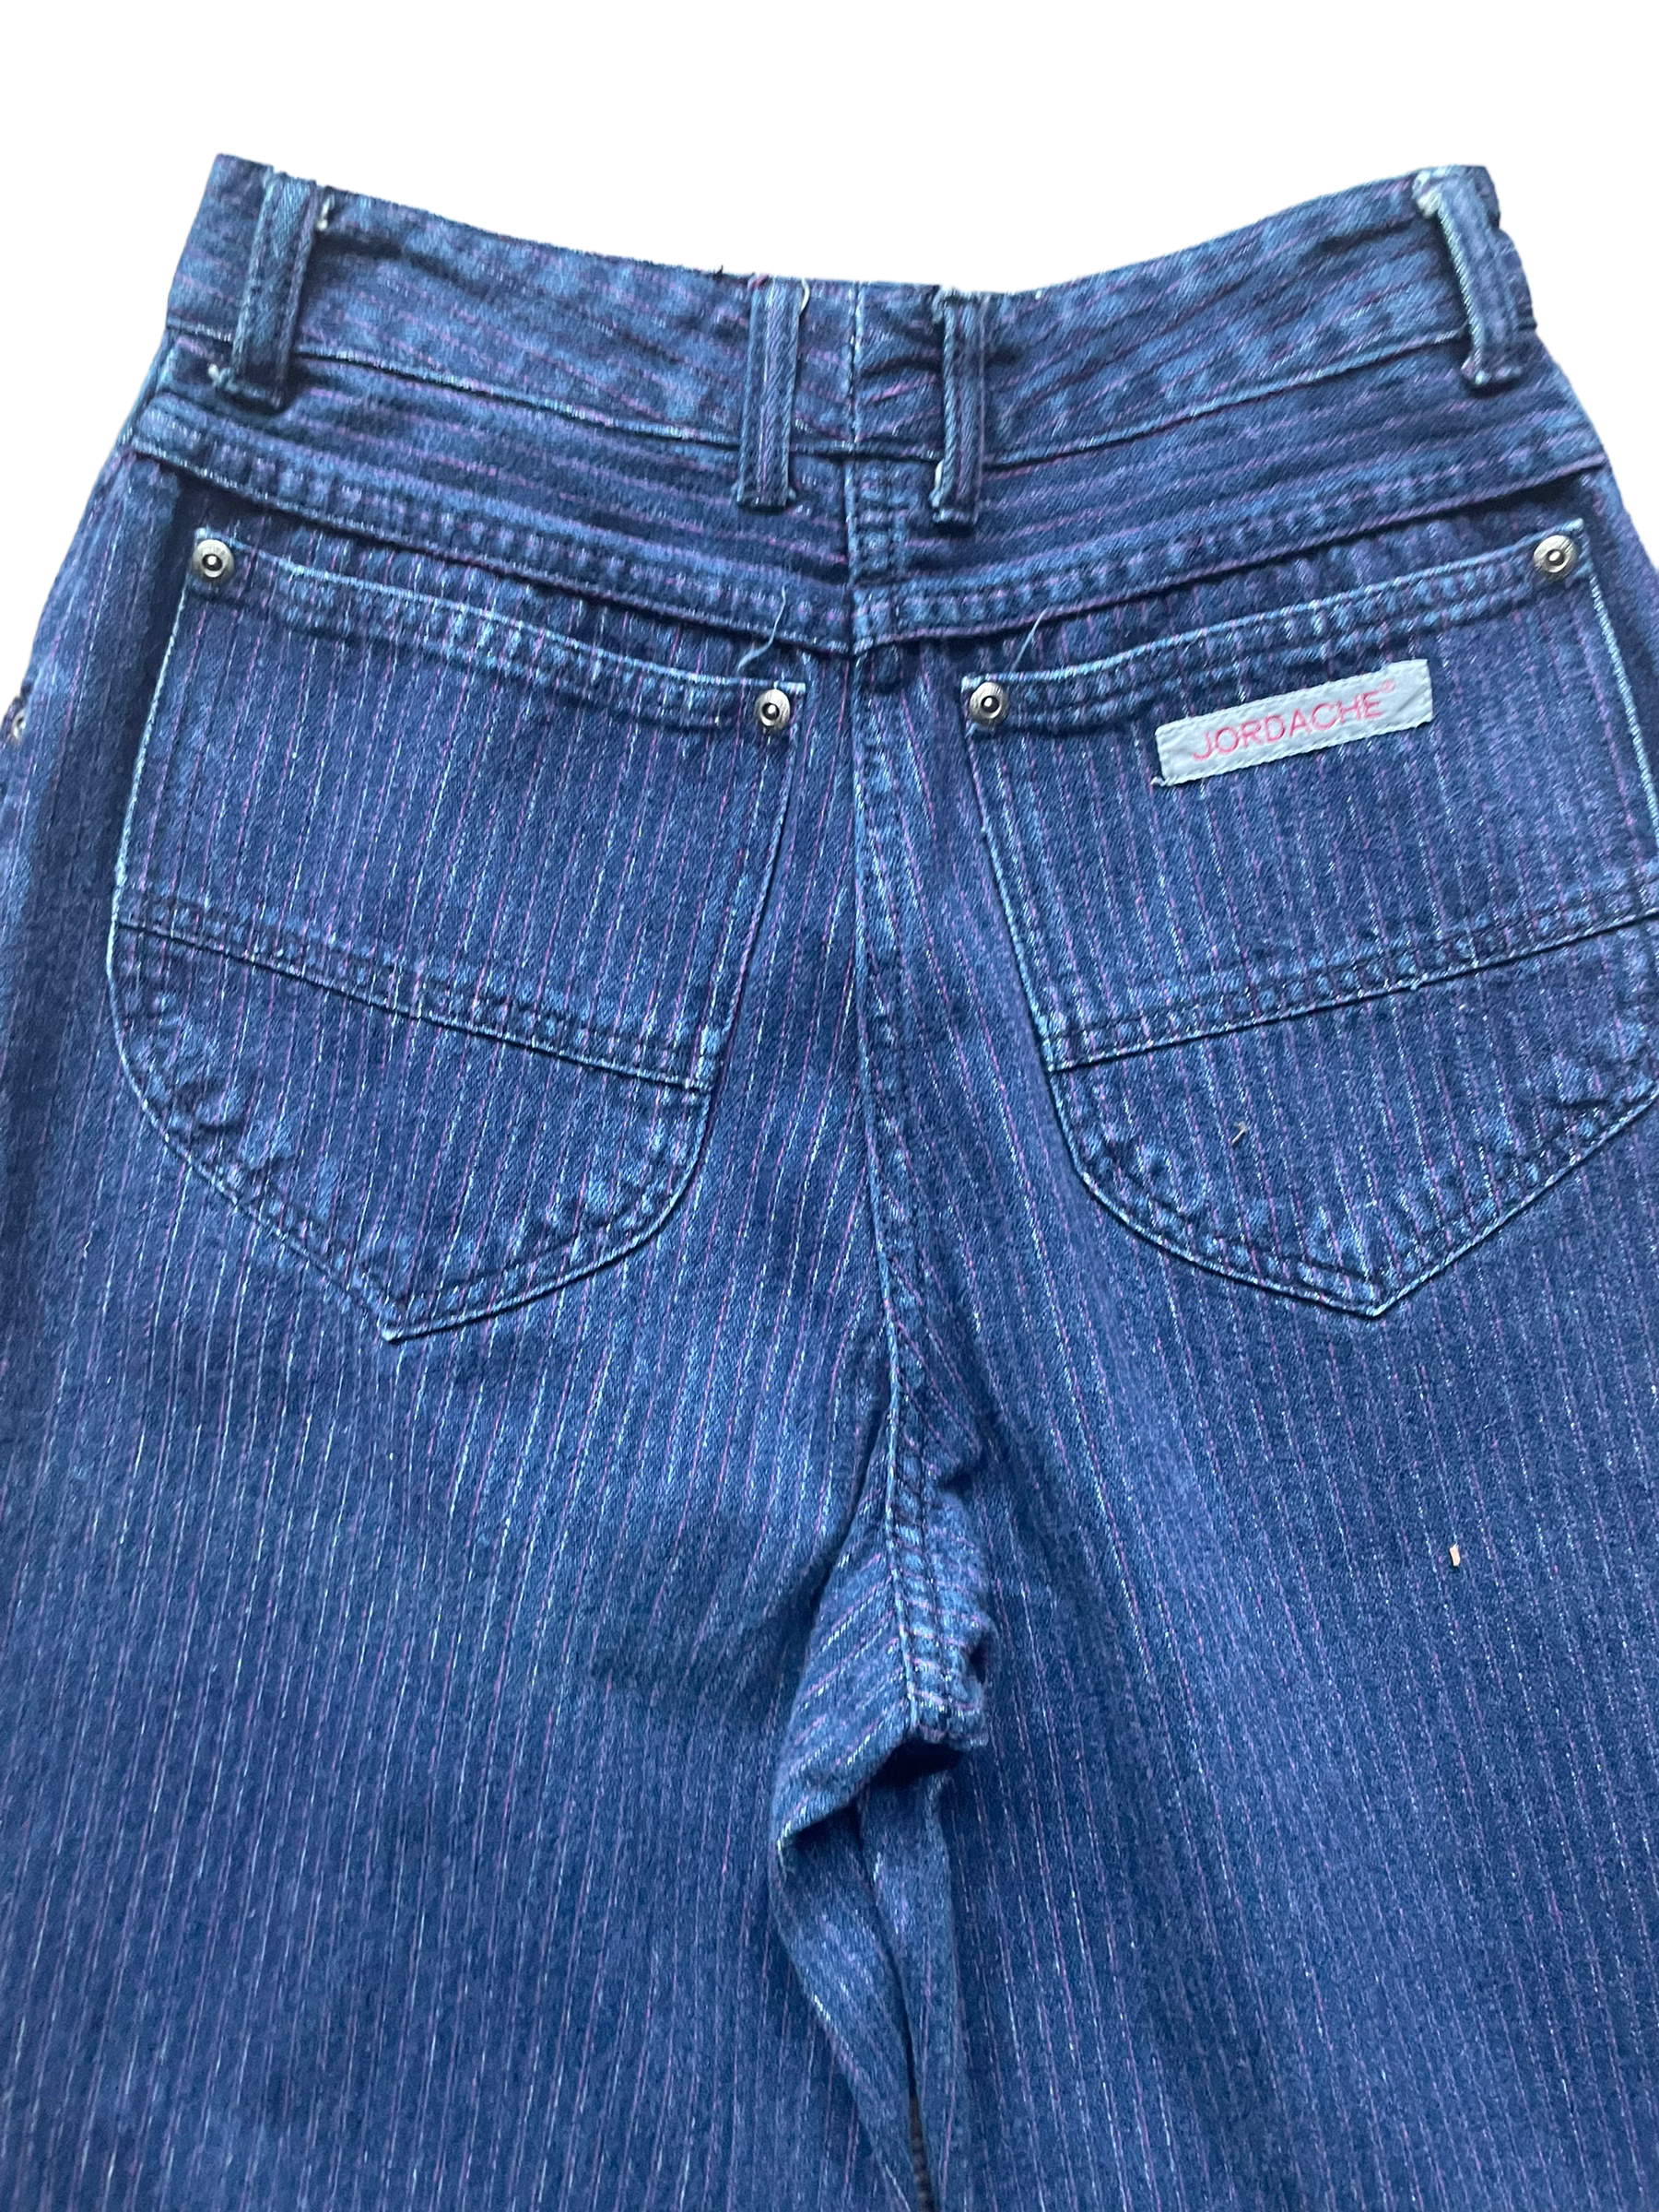 Back pocket view of Vintage 1980s Ladies Purple Pinstripe Jordache Jeans | Barn Owl Seattle | Vintage Ladies Jeans and Denim